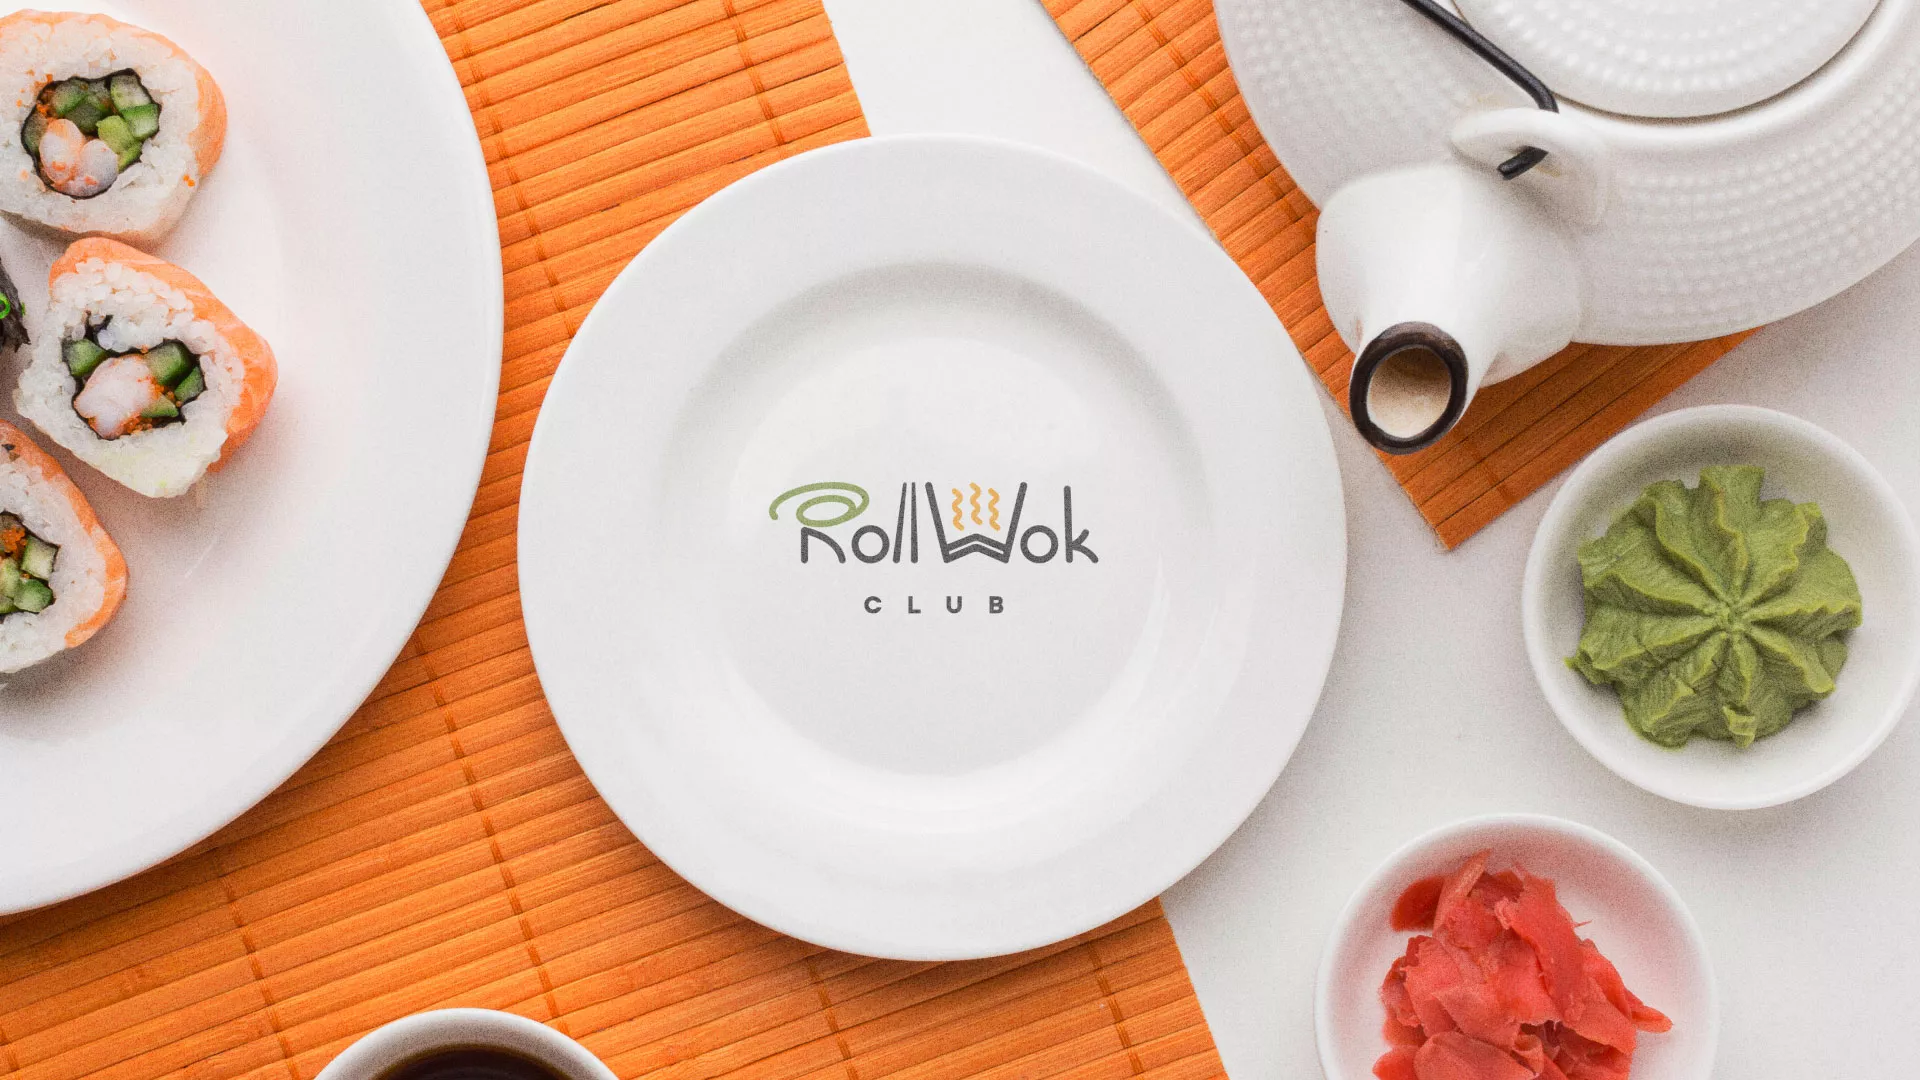 Разработка логотипа и фирменного стиля суши-бара «Roll Wok Club» в Трёхгорном